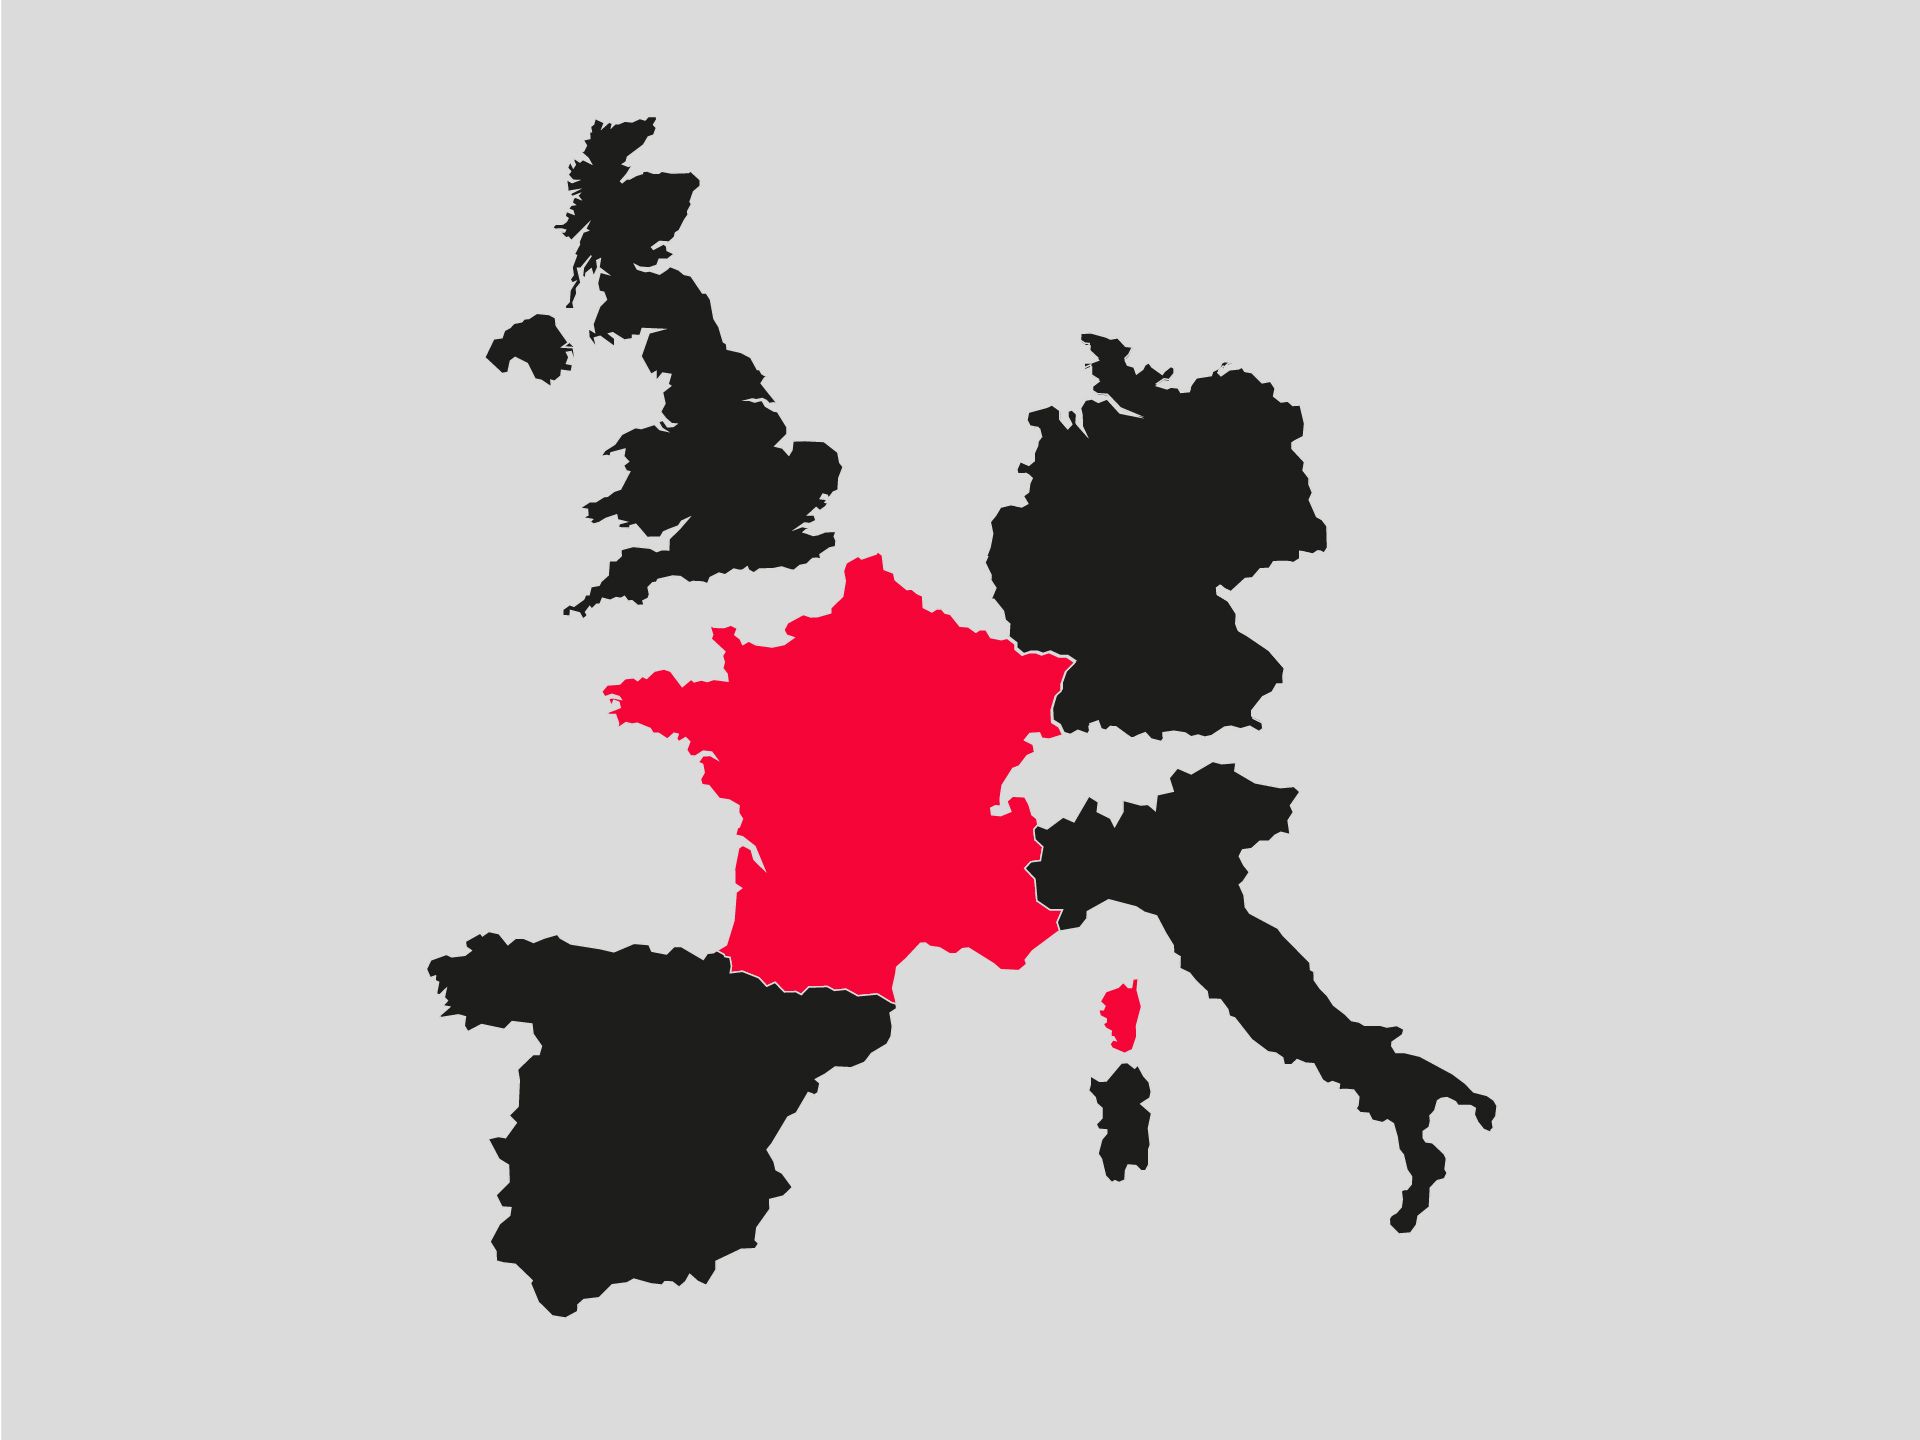 Das Bild zeigt Europa, Frankreich ist farblich hervorgehoben.